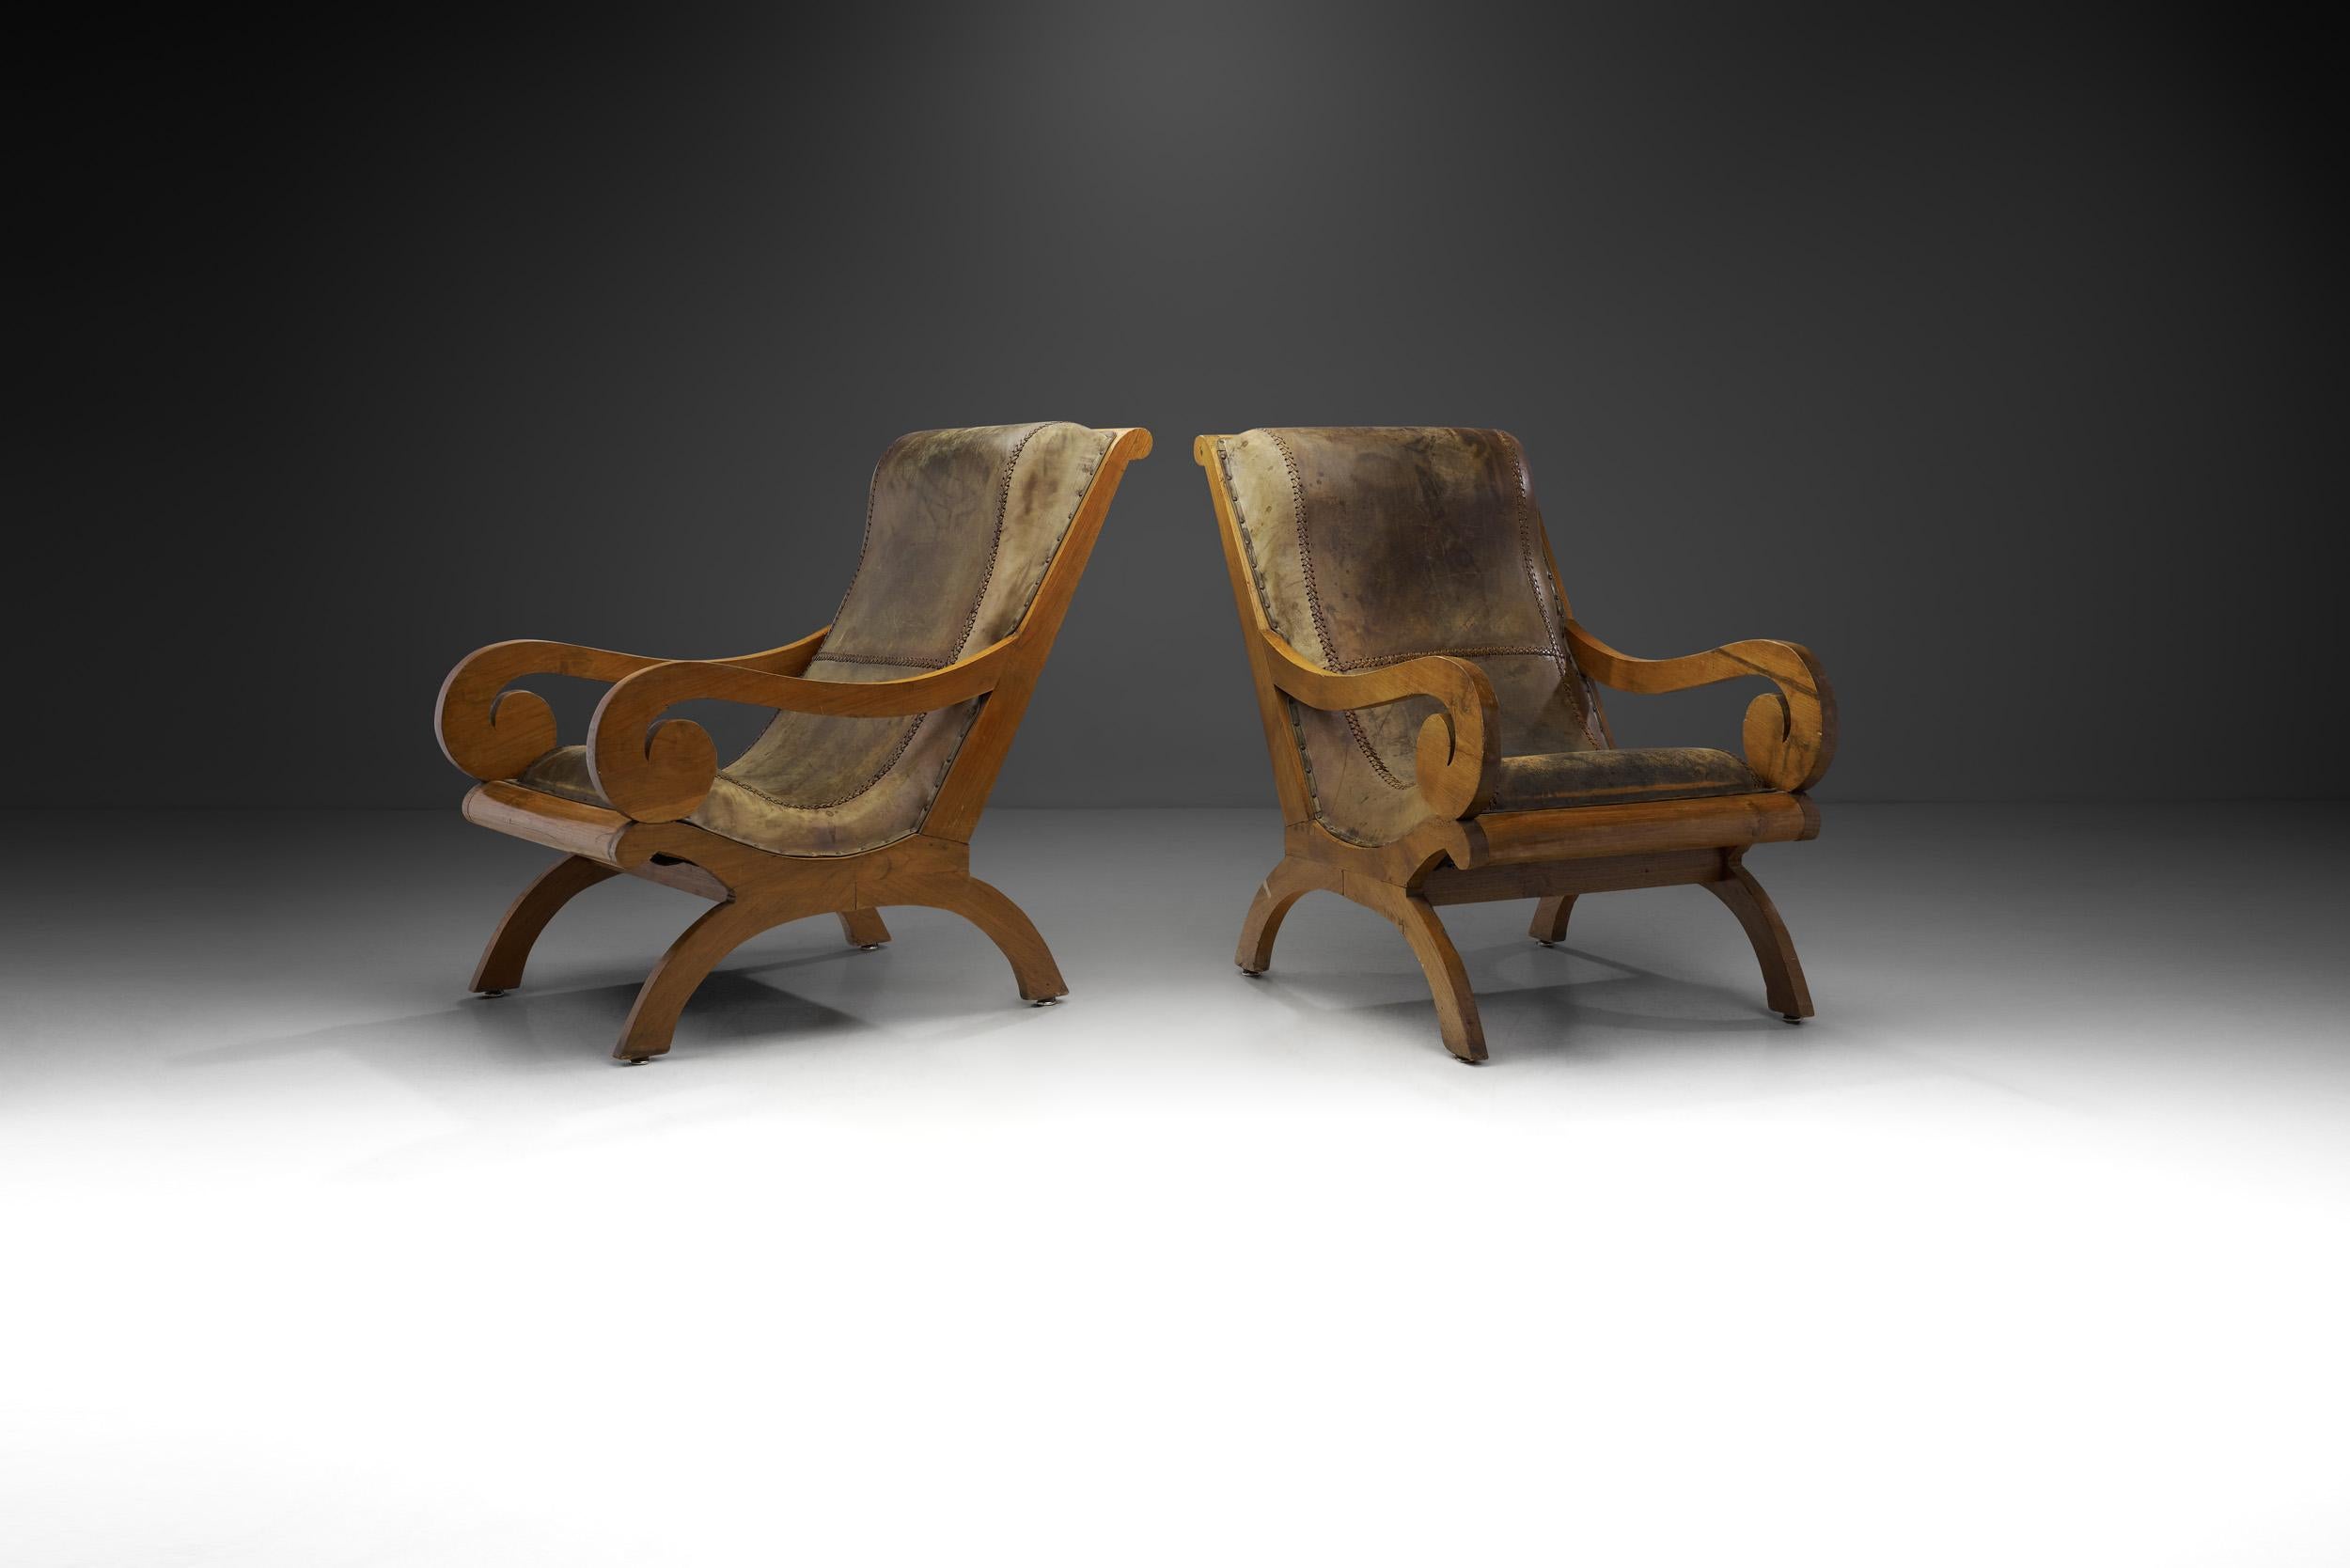 Diese Stühle sind ästhetisch und gestalterisch eine Mischung aus dem ikonischen Butaque-Stuhl und indonesischen Pflanzstühlen aus der Kolonialzeit. Der Butaque, eine Mischung aus spanischen X-Stühlen und präkolumbianischen Ritualstühlen aus der